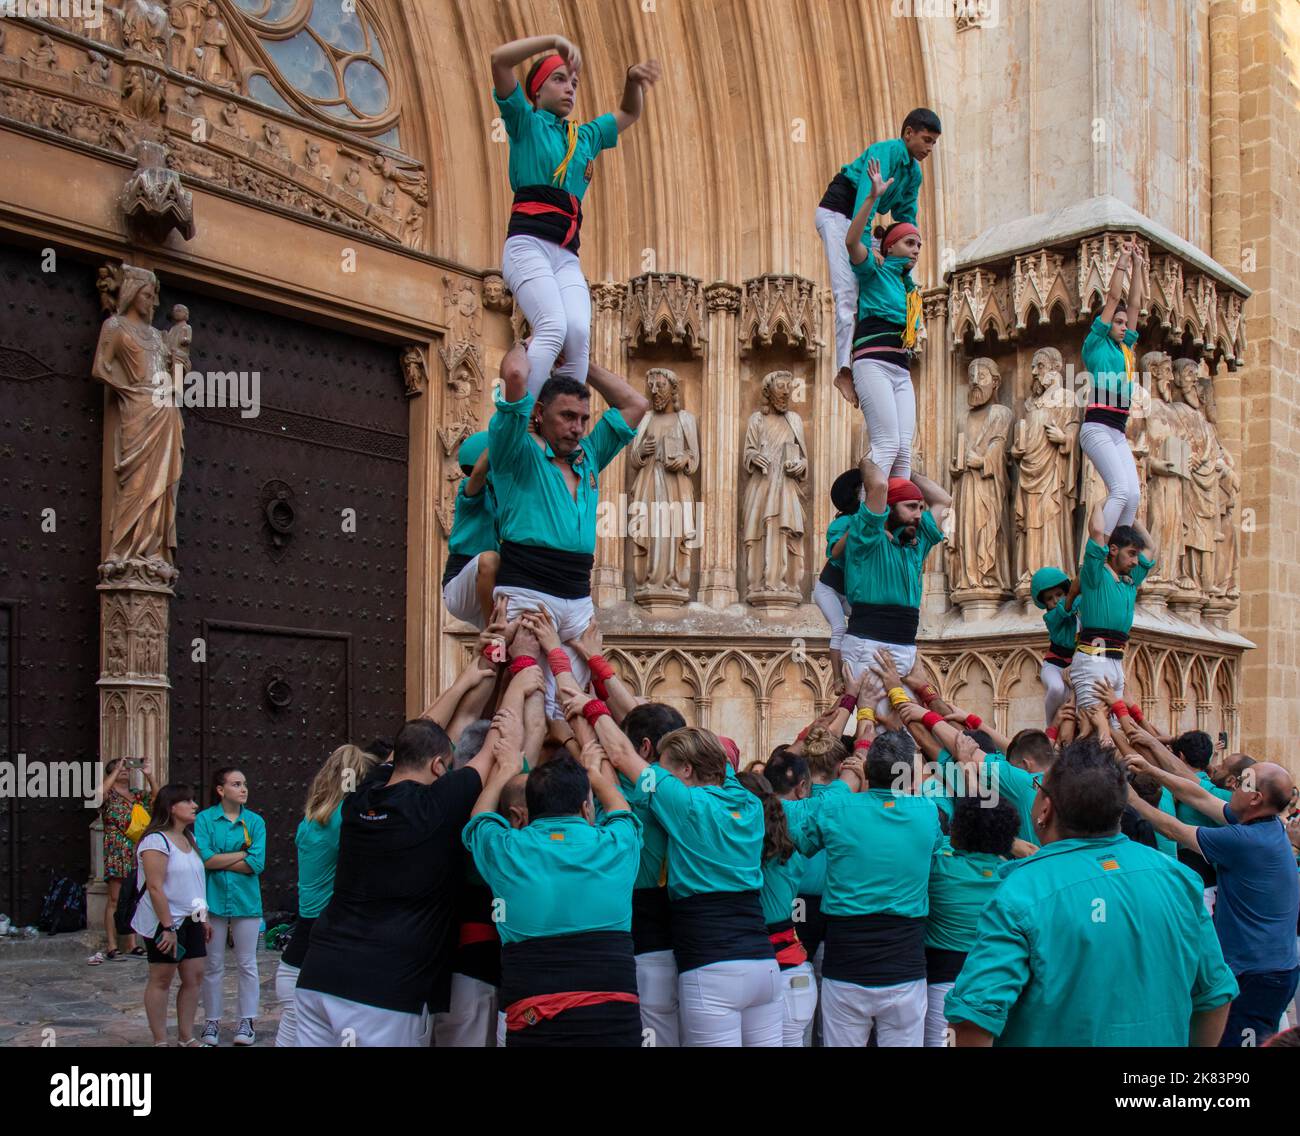 Castells : gente haciendo torres humanas frente a la catedral de Tarragona, espectáculo tradicional en Cataluña, España Foto Stock